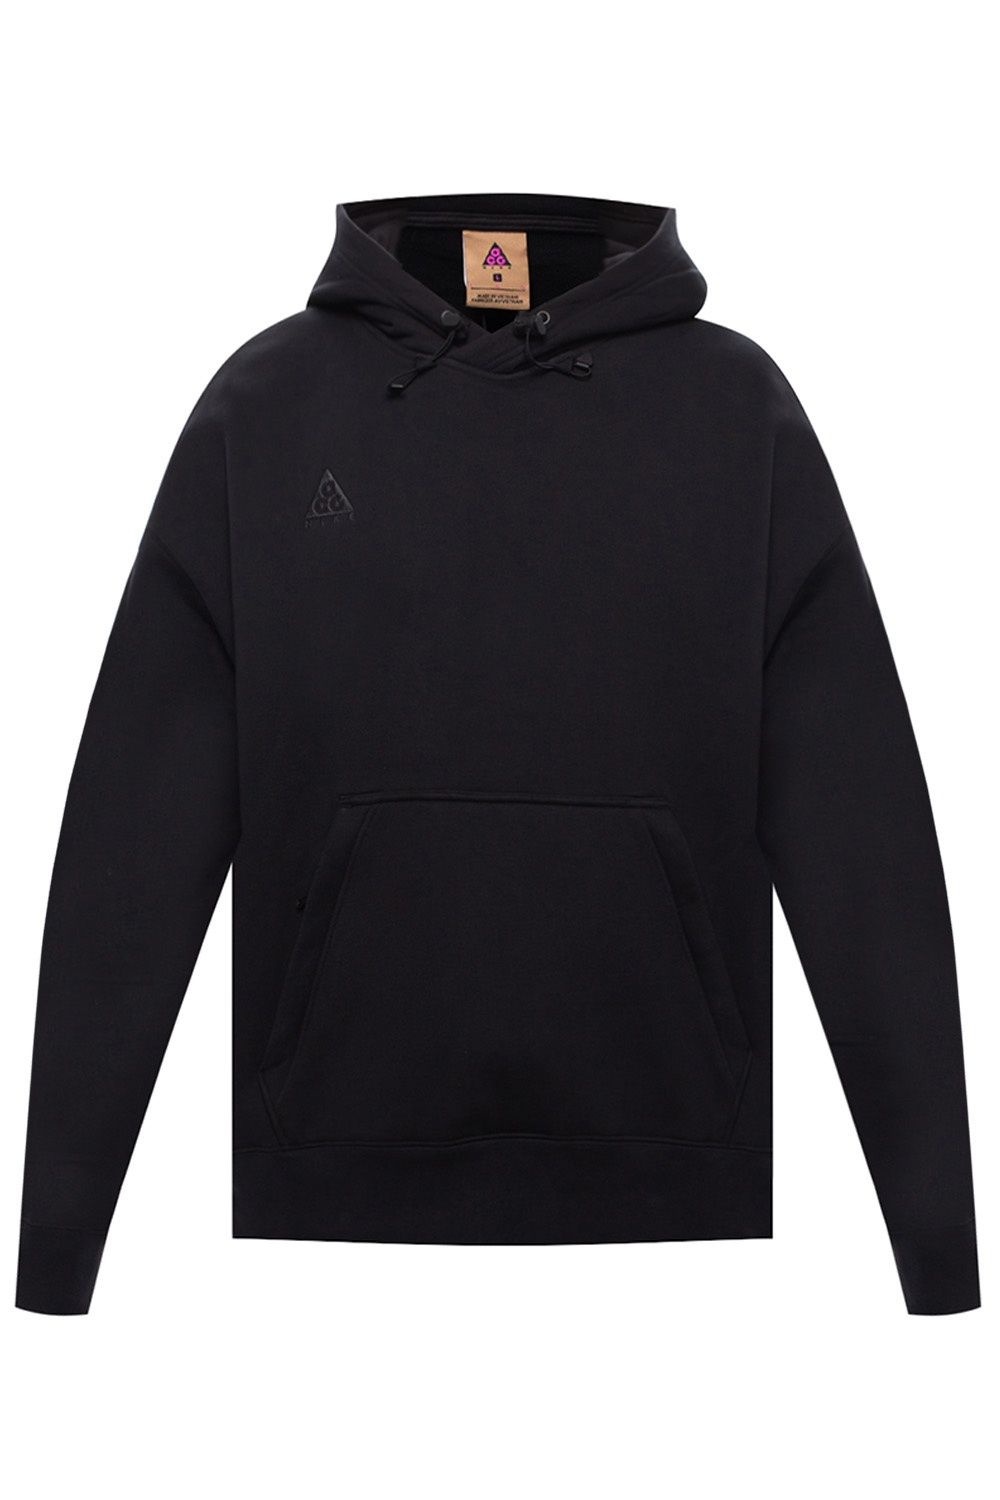 black acg hoodie